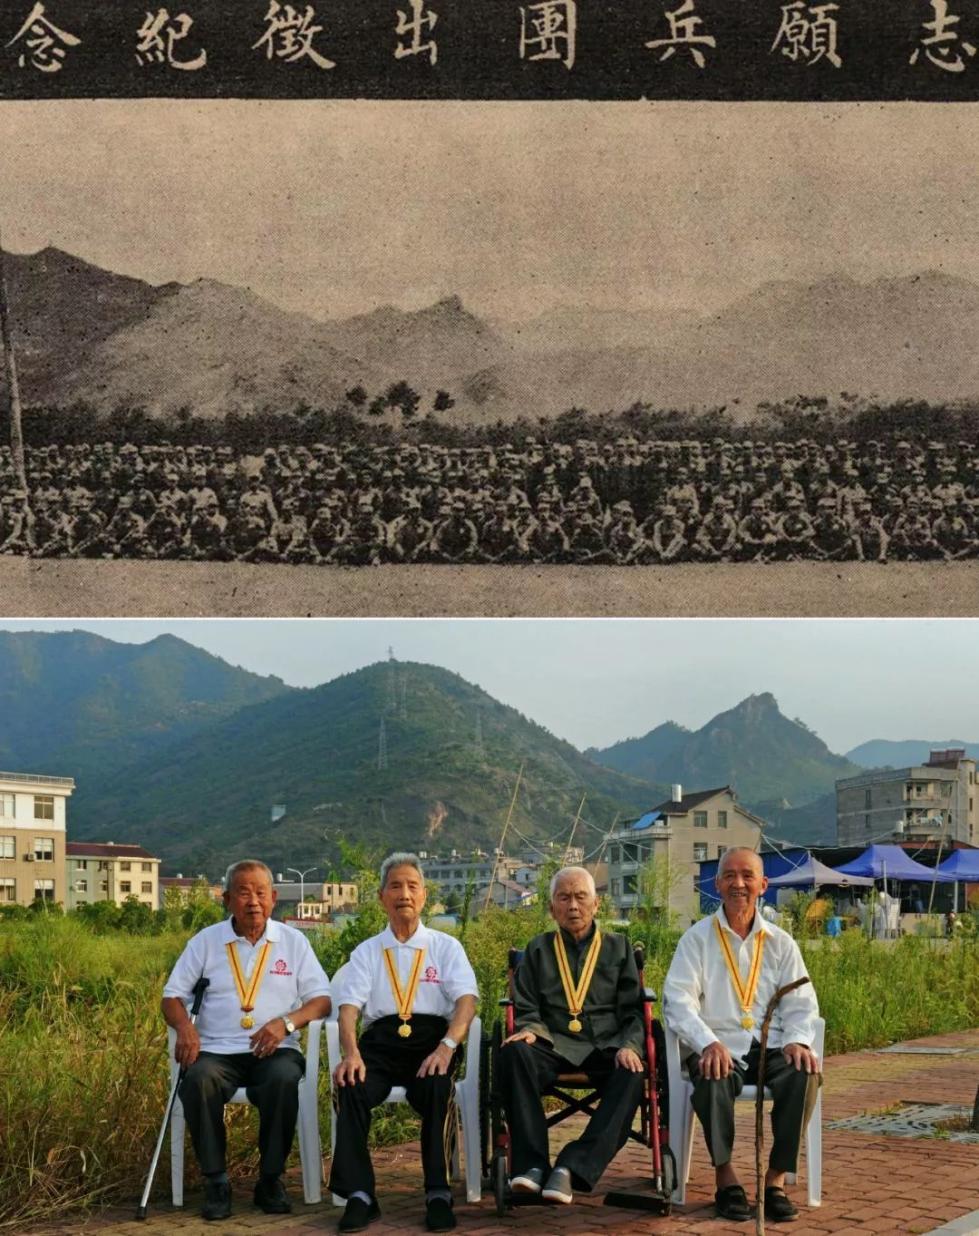 上图：1939年10月10日，天台县各界隆重举行欢送志愿兵团出征大会。（局部）；